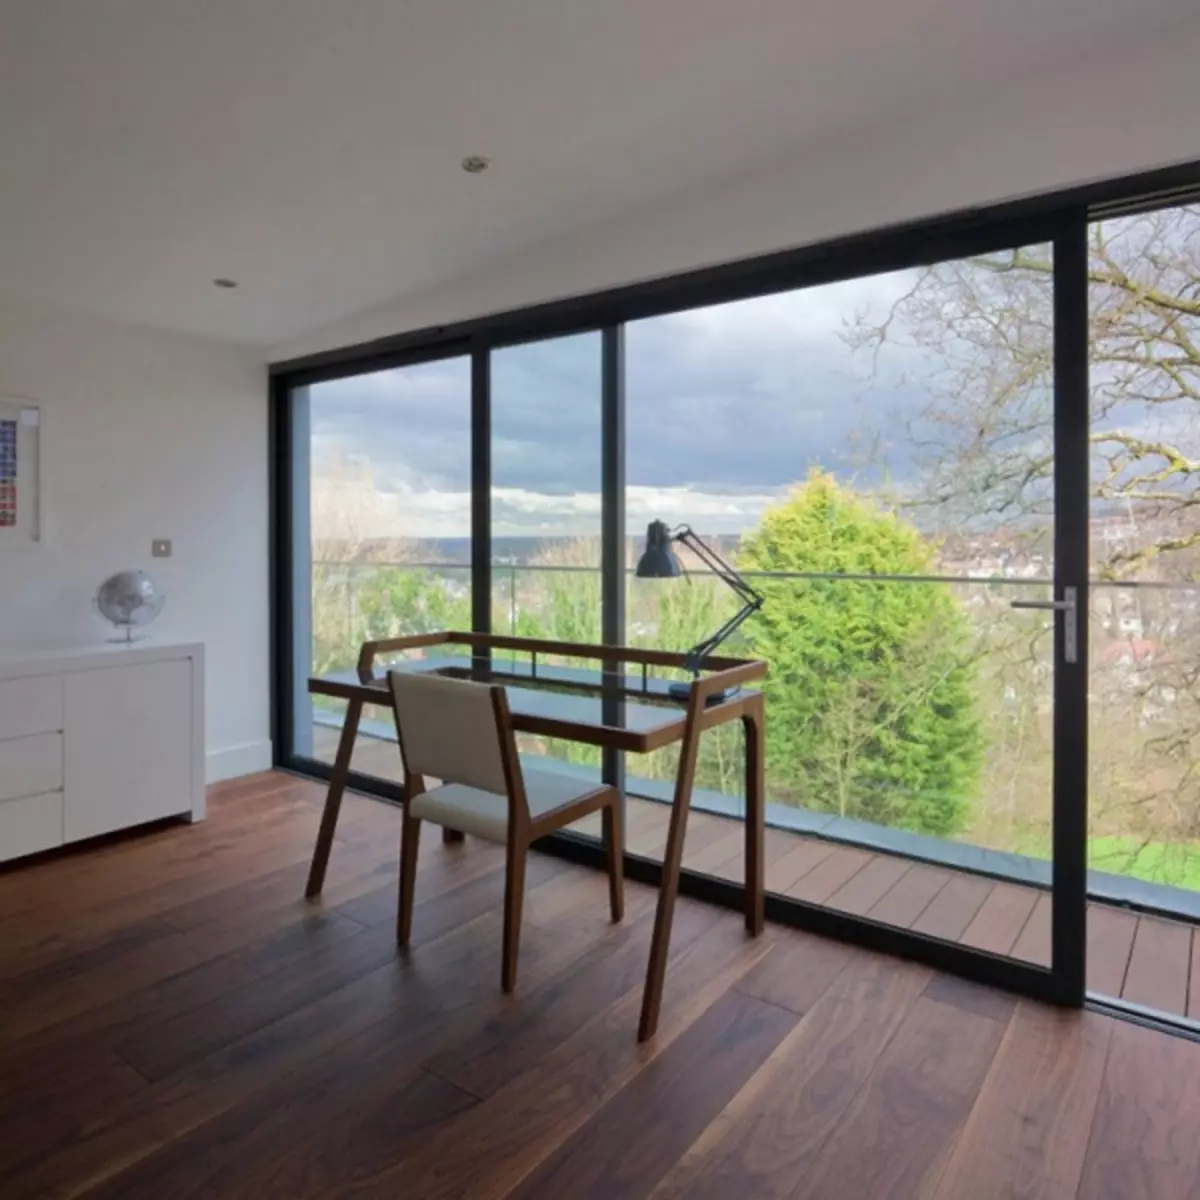 Panoramesch Fensteren am Interieur: Raum am Haus an Optiounen fir Framung a Gebrauch am Design vum Appartement (47 Fotoen)